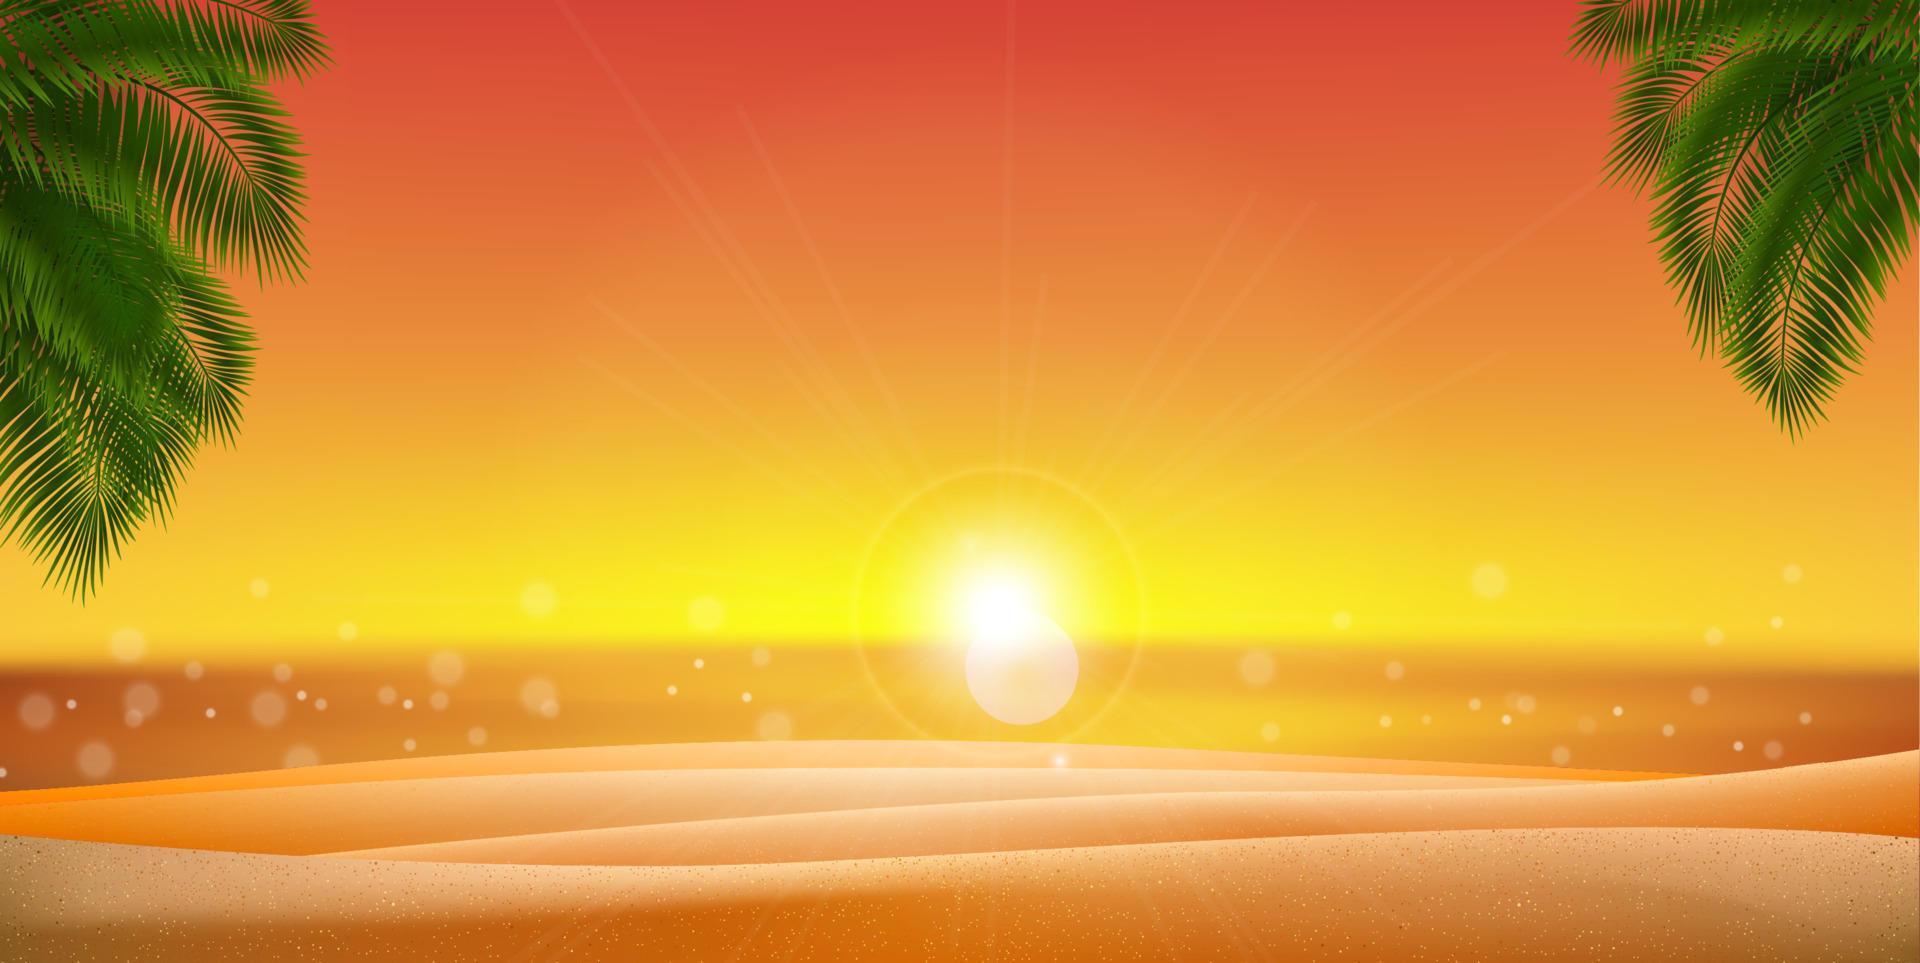 gouden zand palm bladeren met zonsondergang, zonsopkomst en zee, oceaan. vector eps 10